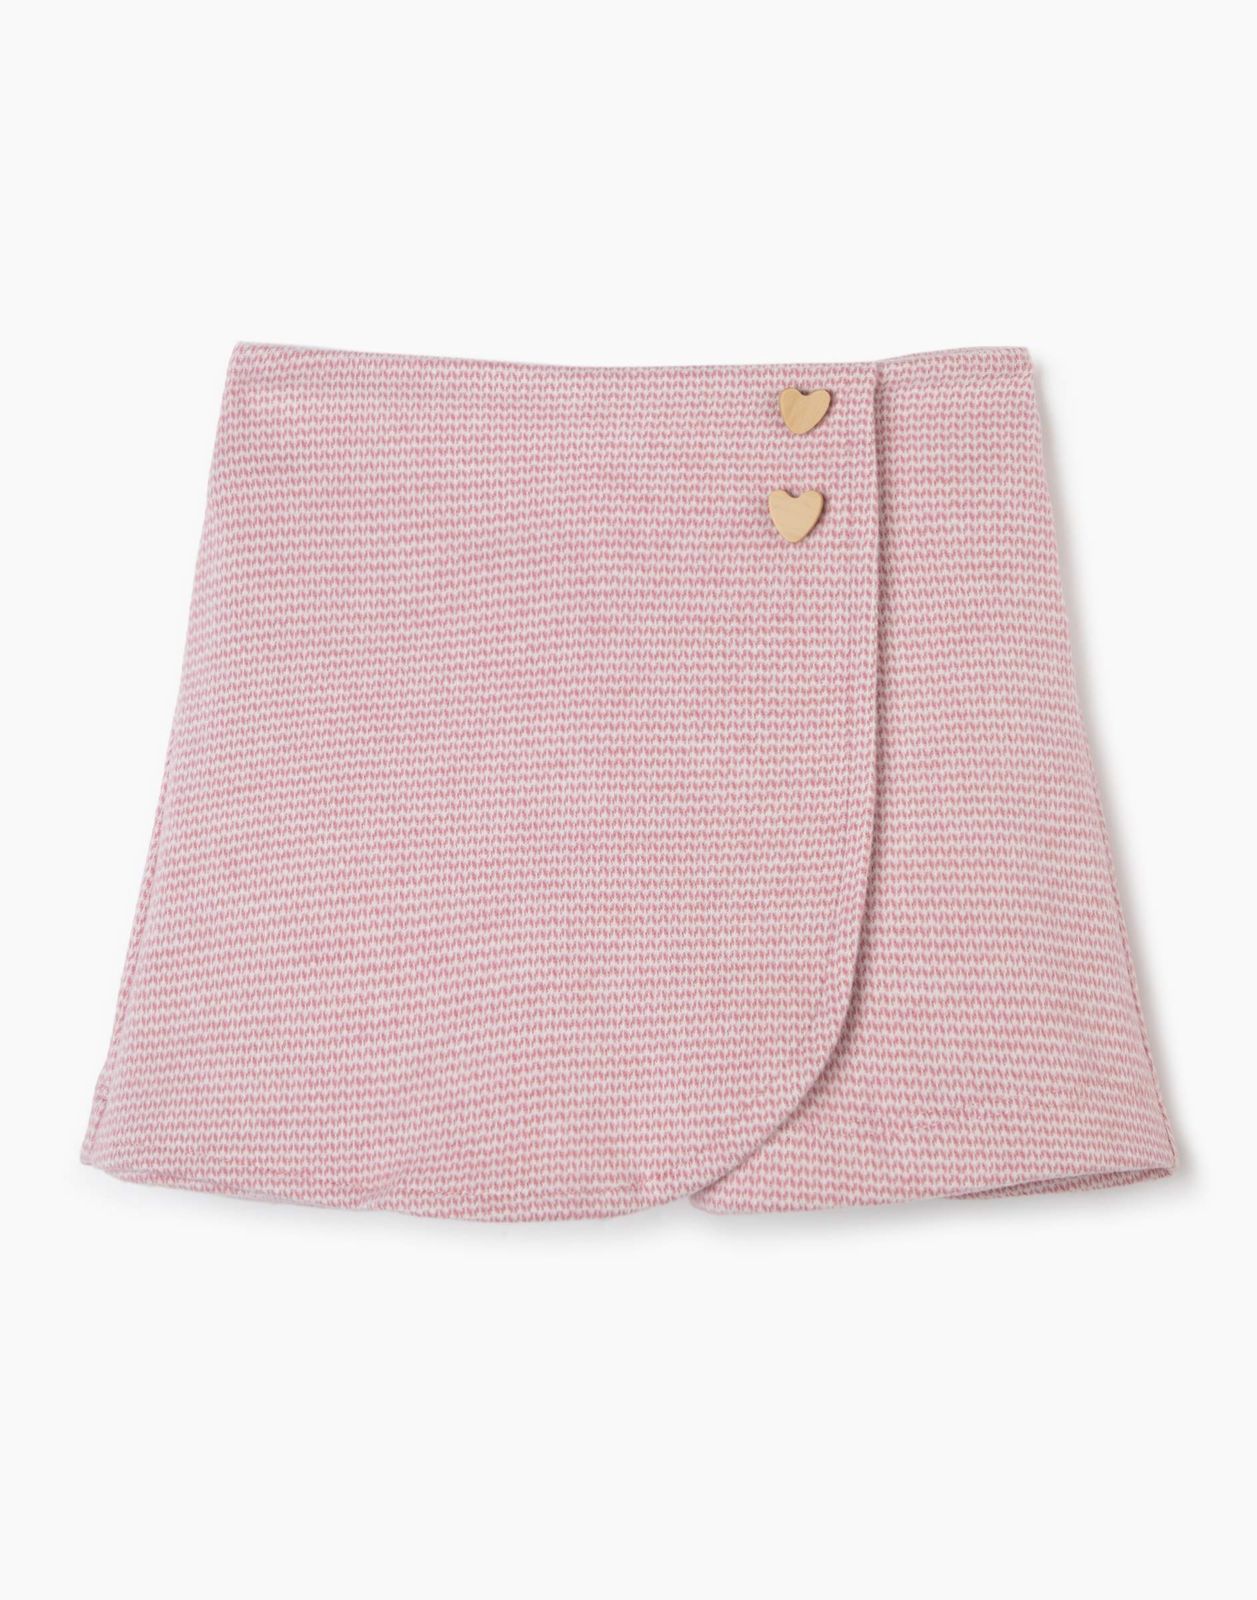 Юбка-шорты детская Gloria Jeans GSK017629, розовый/белый, 86 юбка шорты женская asics advantage белый